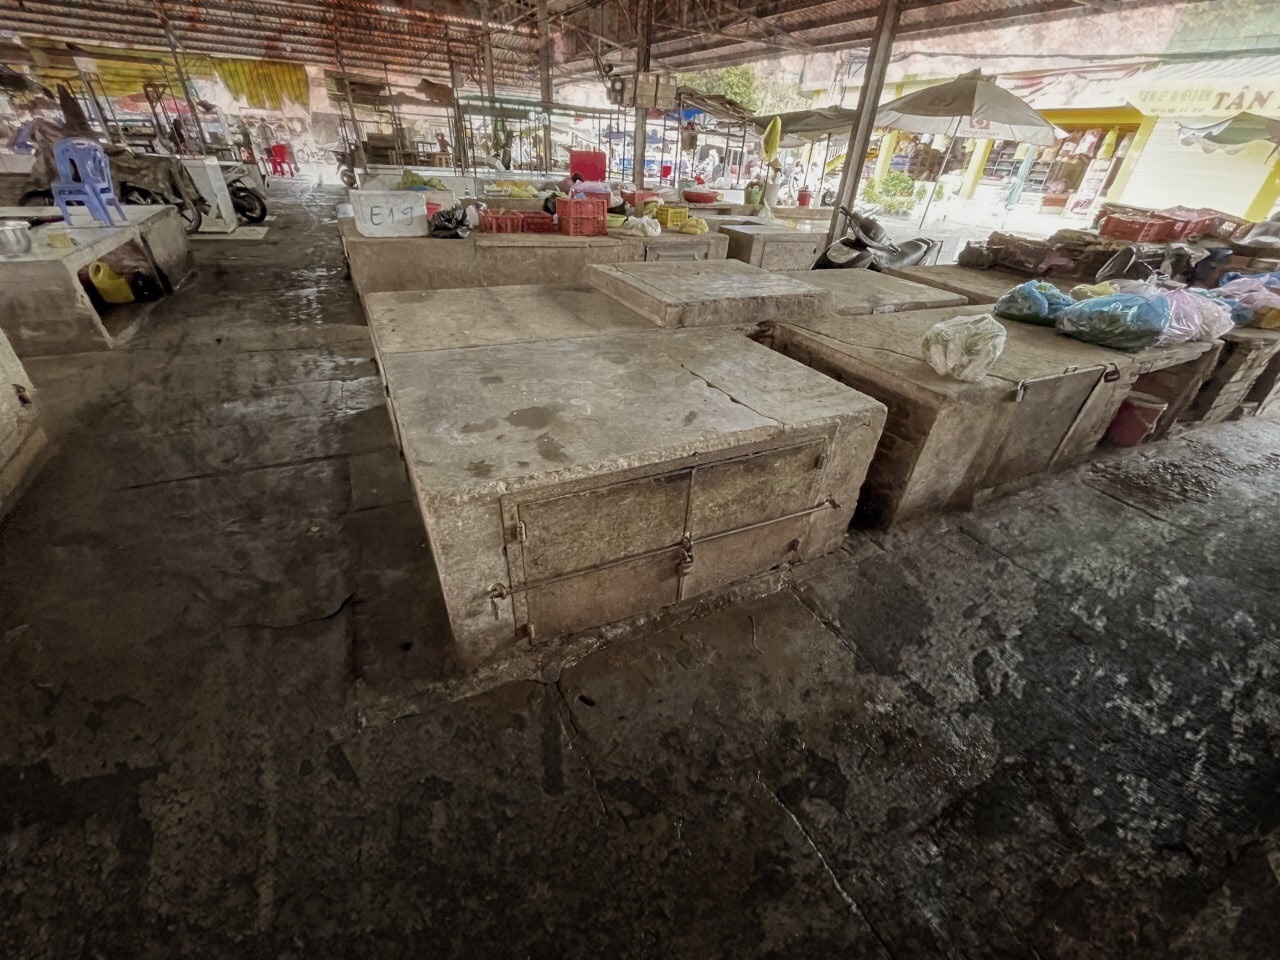 Khám phá Chợ Bà Mụ mới bên trong Phố Chợ Phú Khương ở xứ dừa Bến Tre - Ảnh 3.